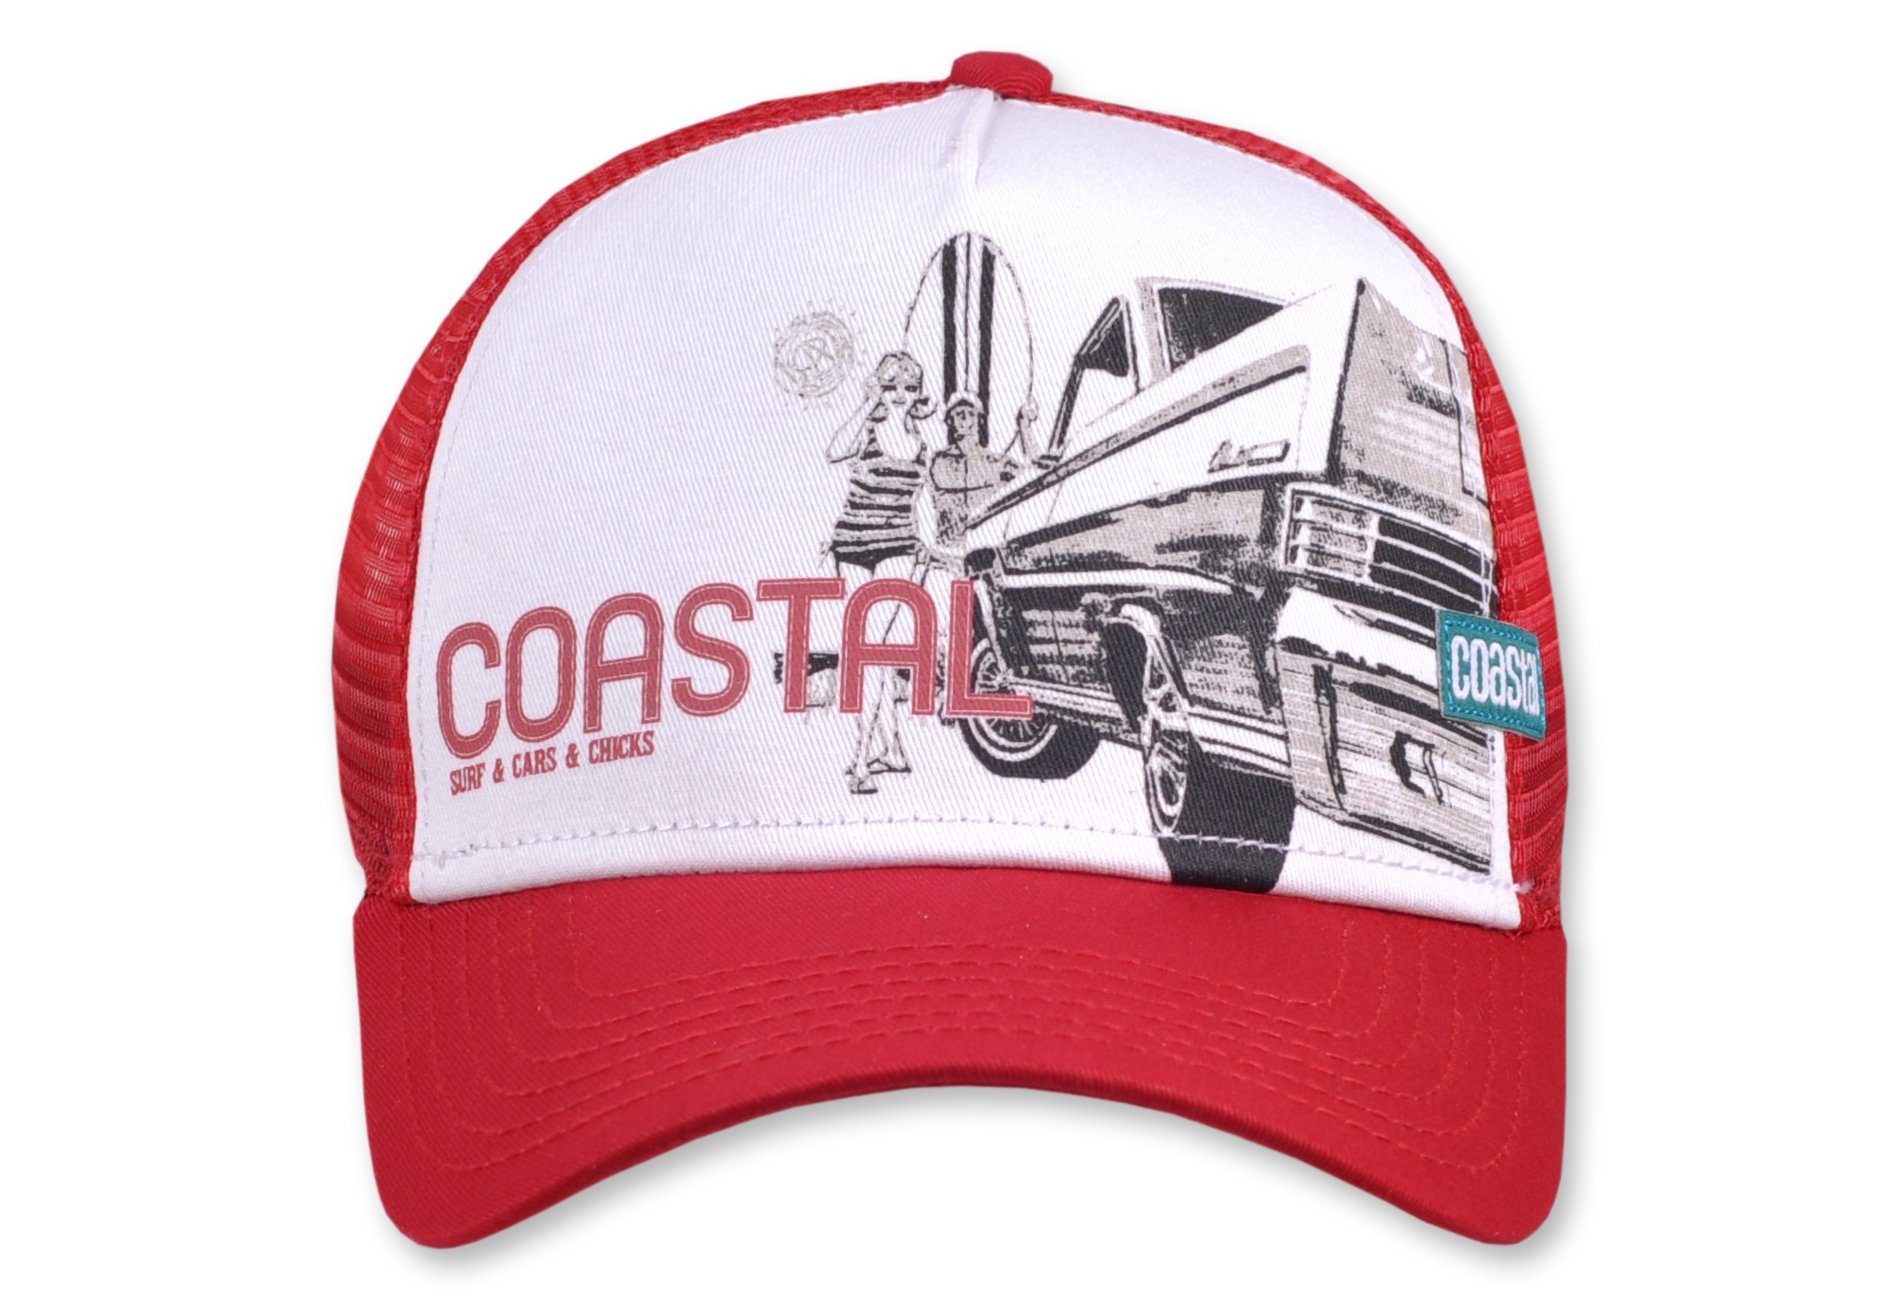 Coastal Trucker Cap Surf & Cars & Chicks